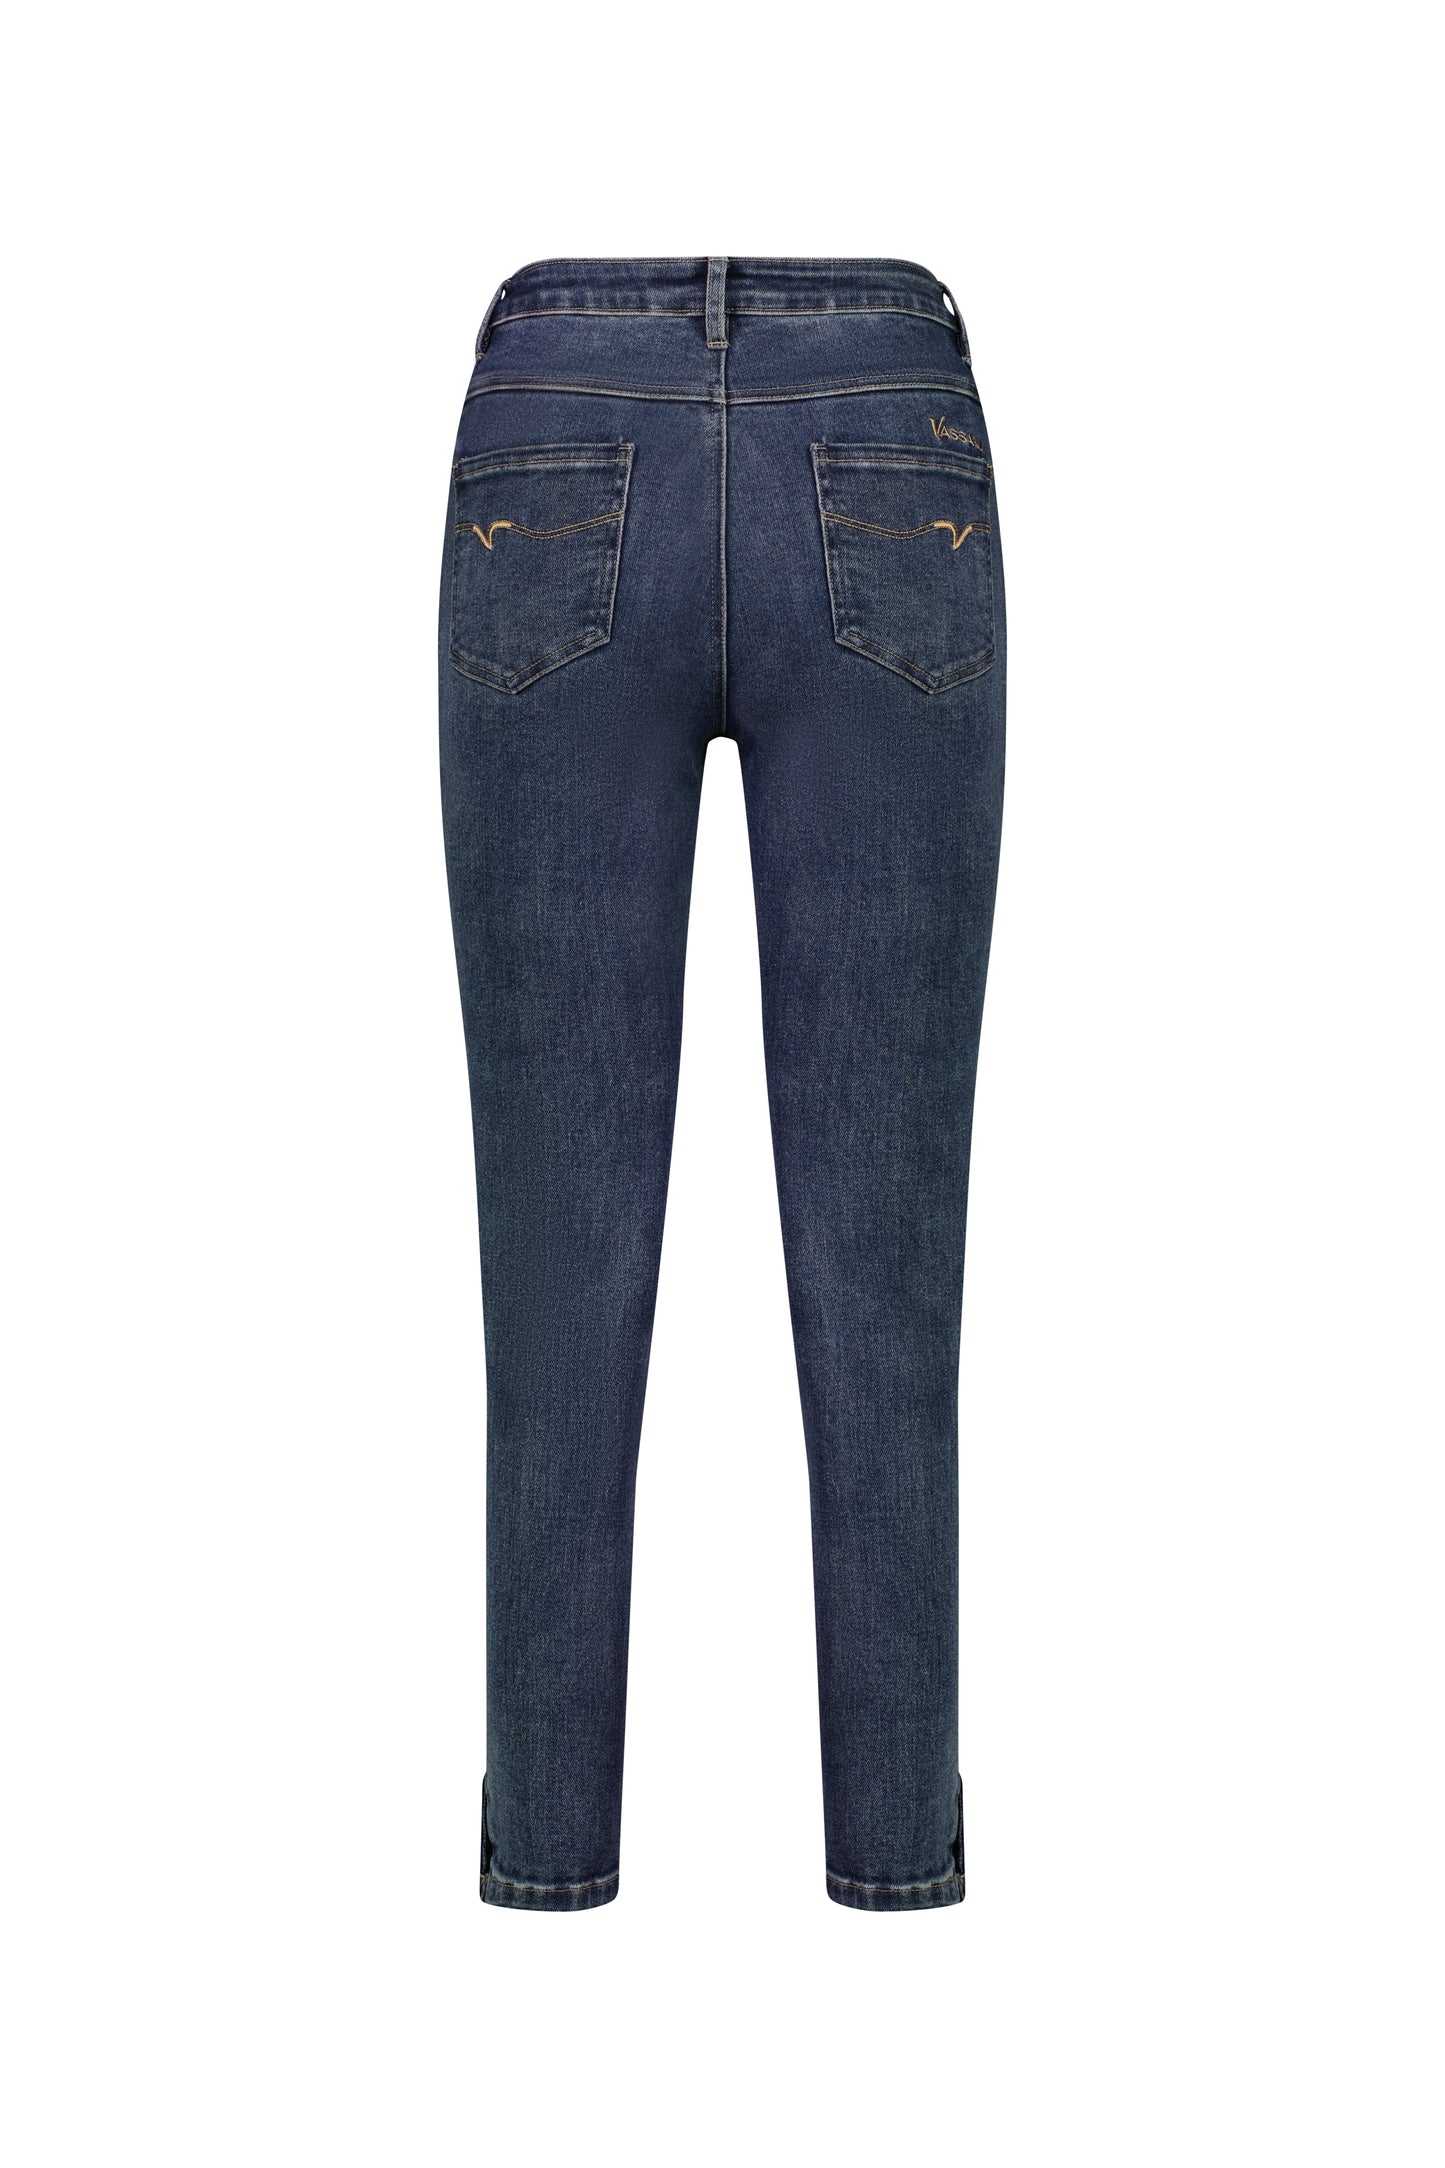 Vassalli - 5947 Ankle Grazer Jeans with Cuff Button - Indigo Wash INSTORE